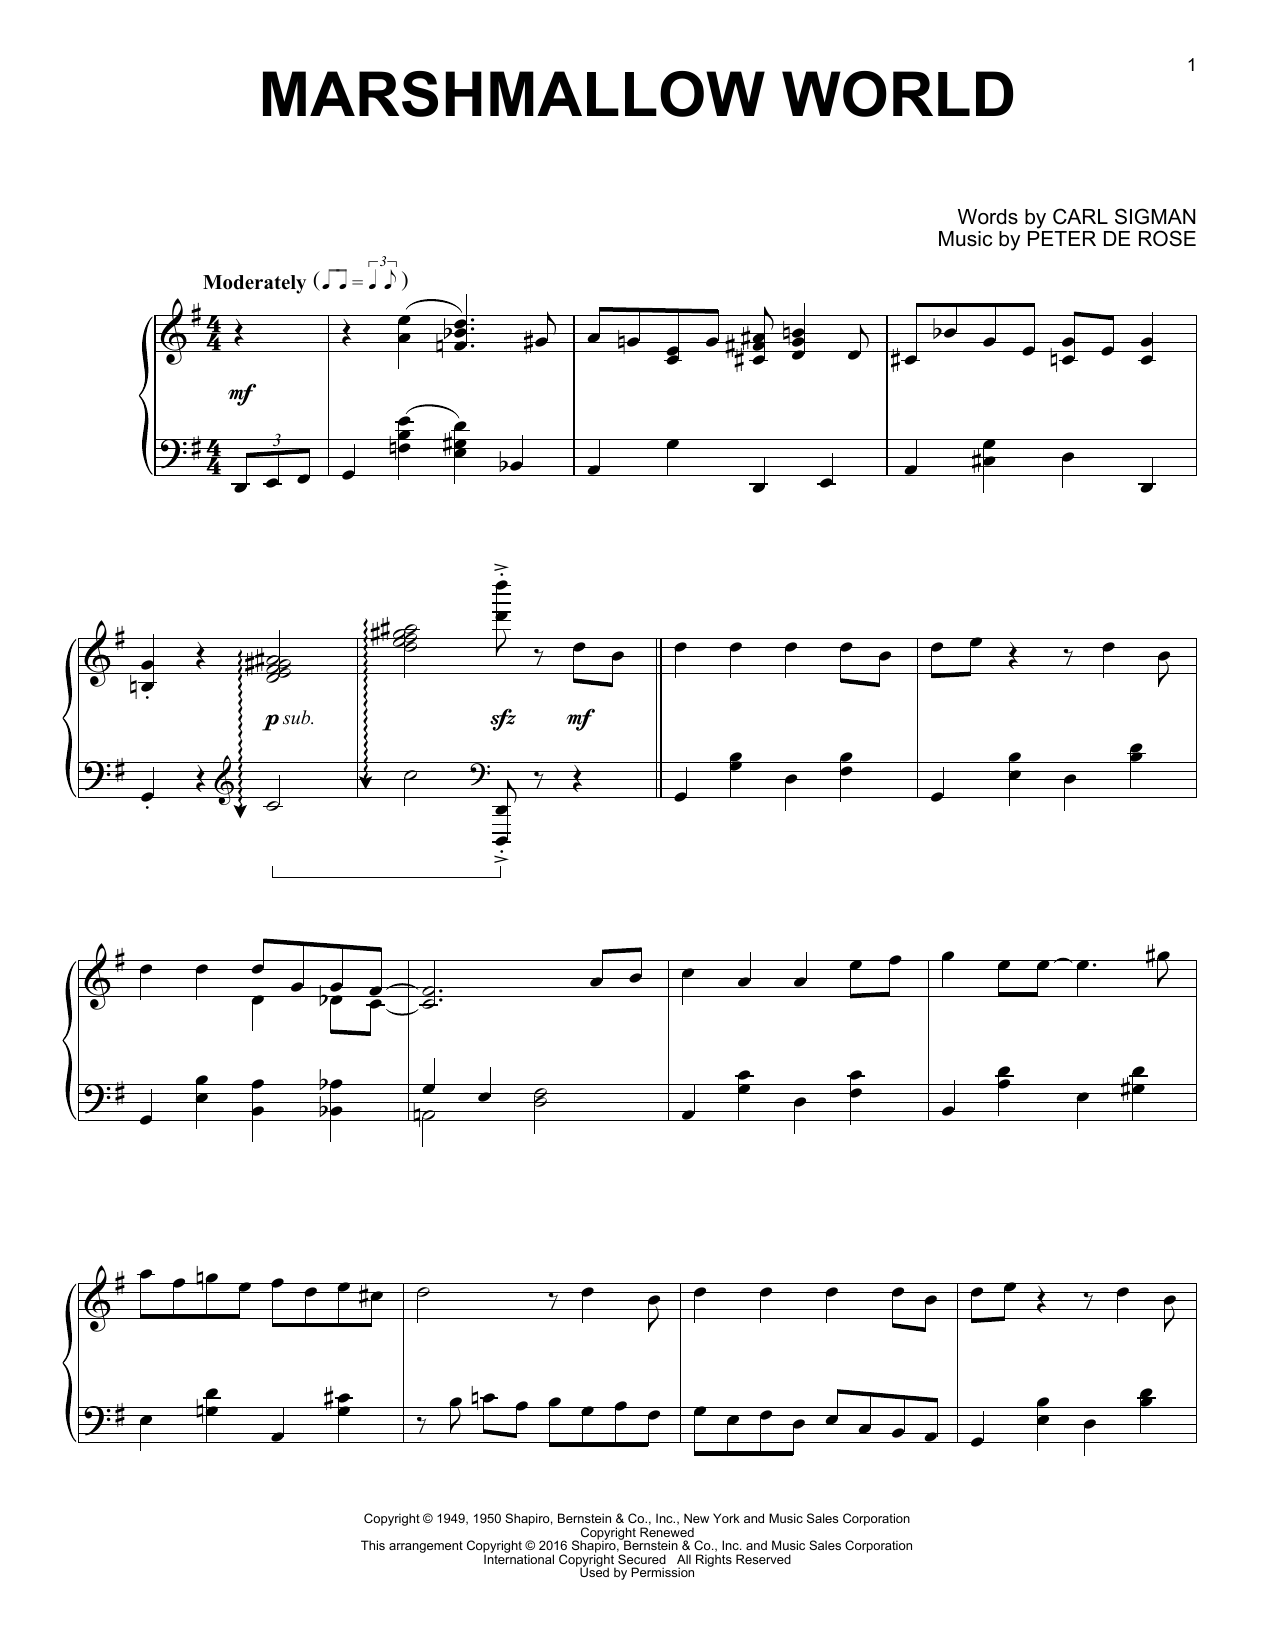 A Marshmallow World (Piano Solo) von Carl Sigman